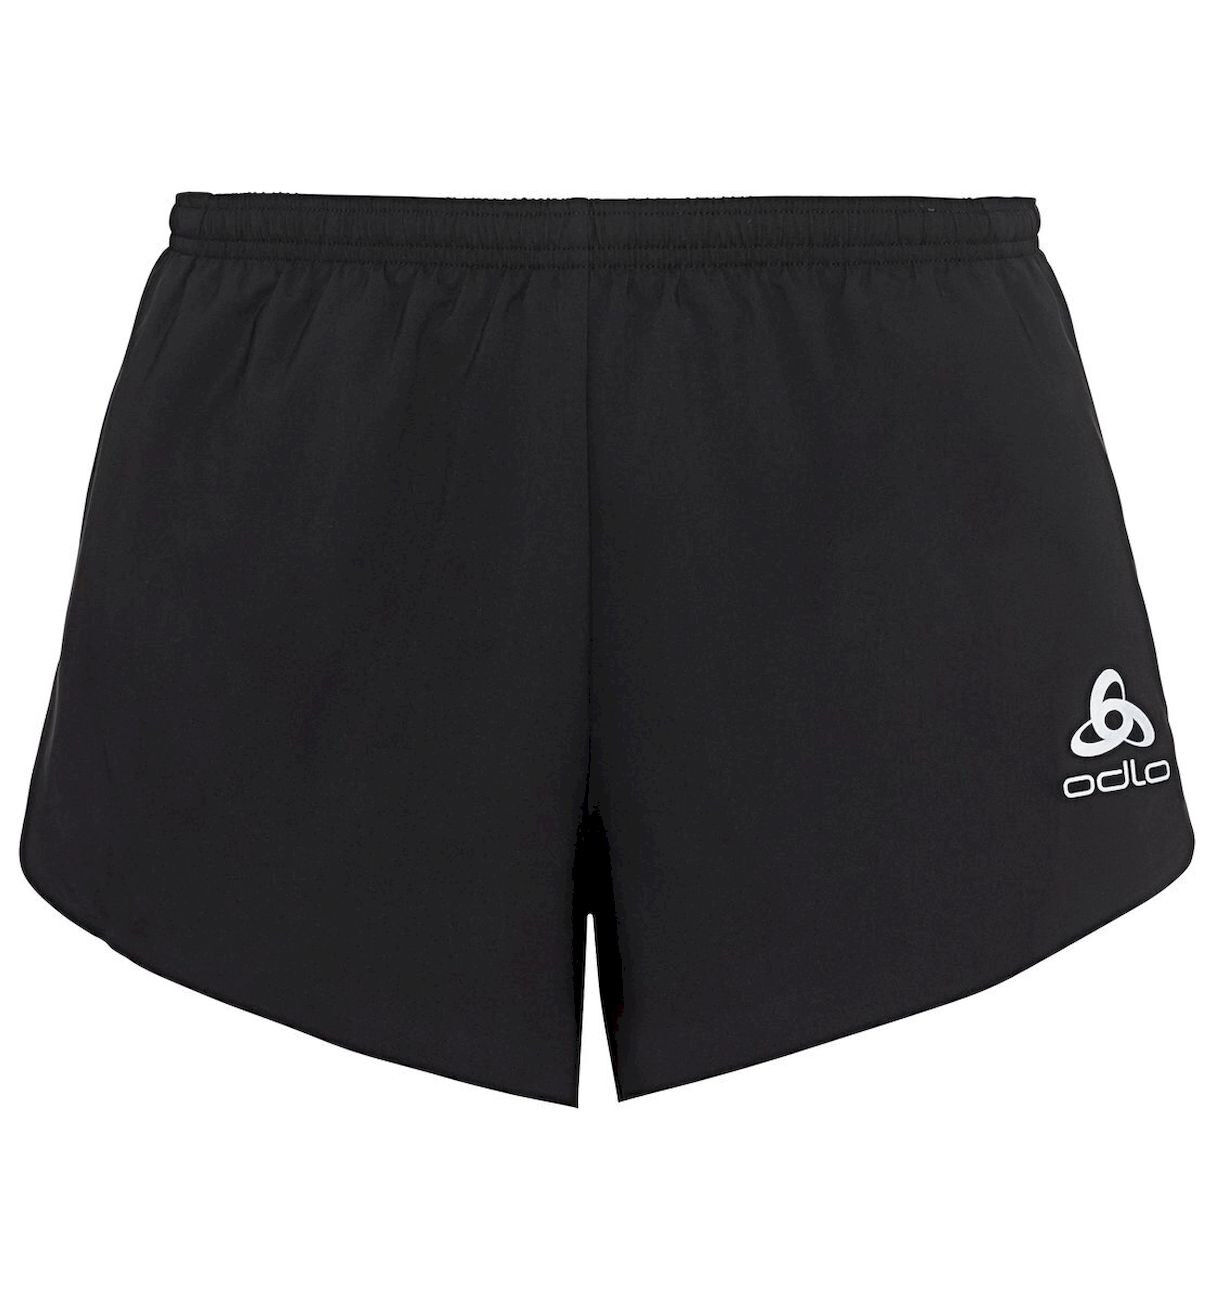 Odlo Zeroweight 3 Inch - Running shorts - Men's | Hardloop